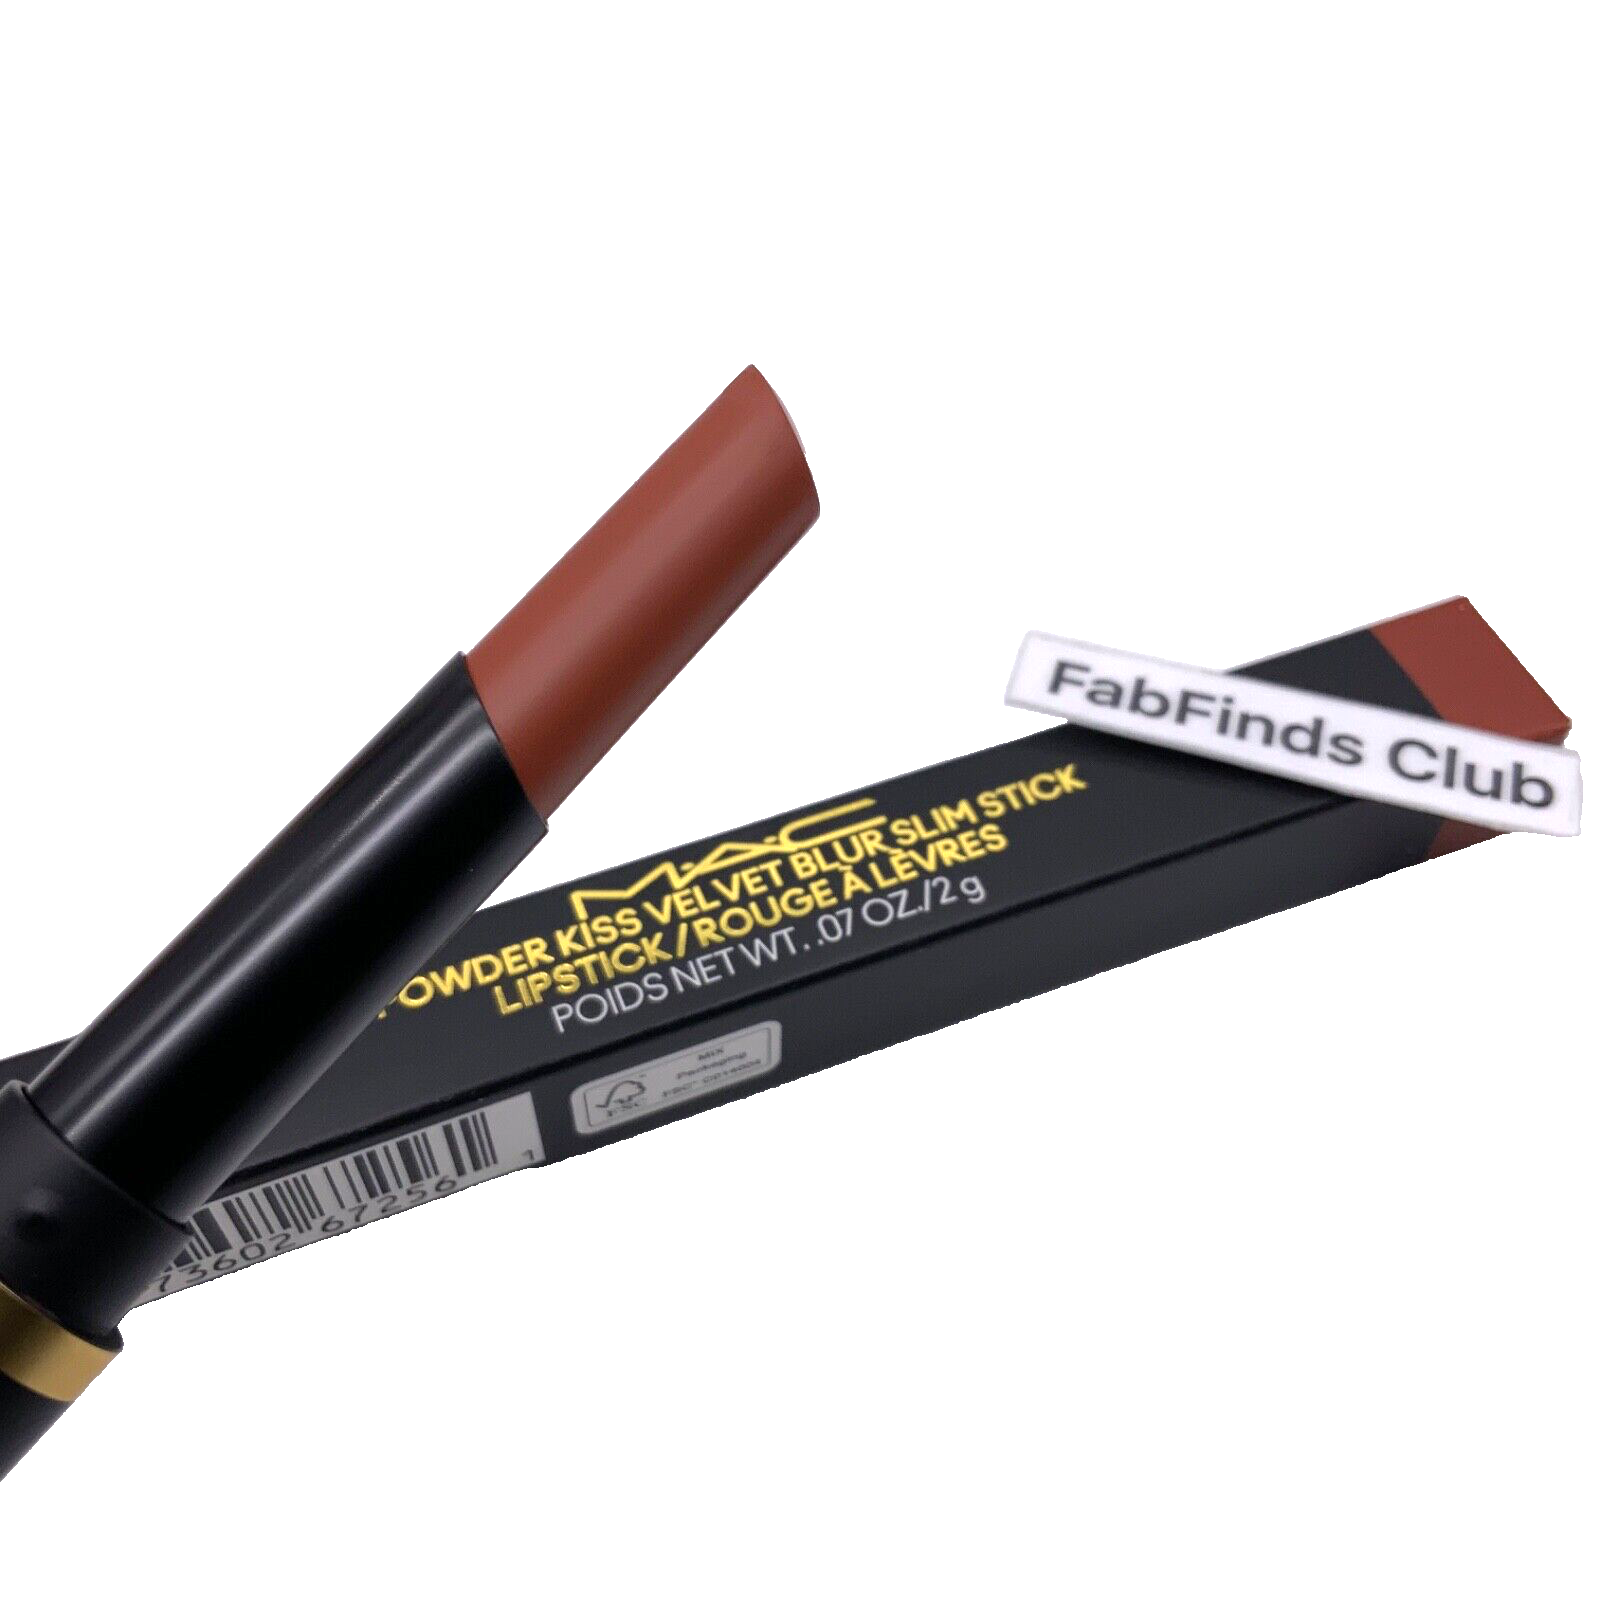 Primary image for MAC Powder Kiss Velvet Blur Slim Stick Lipstick Full Size #882 ALL STAR ANISE